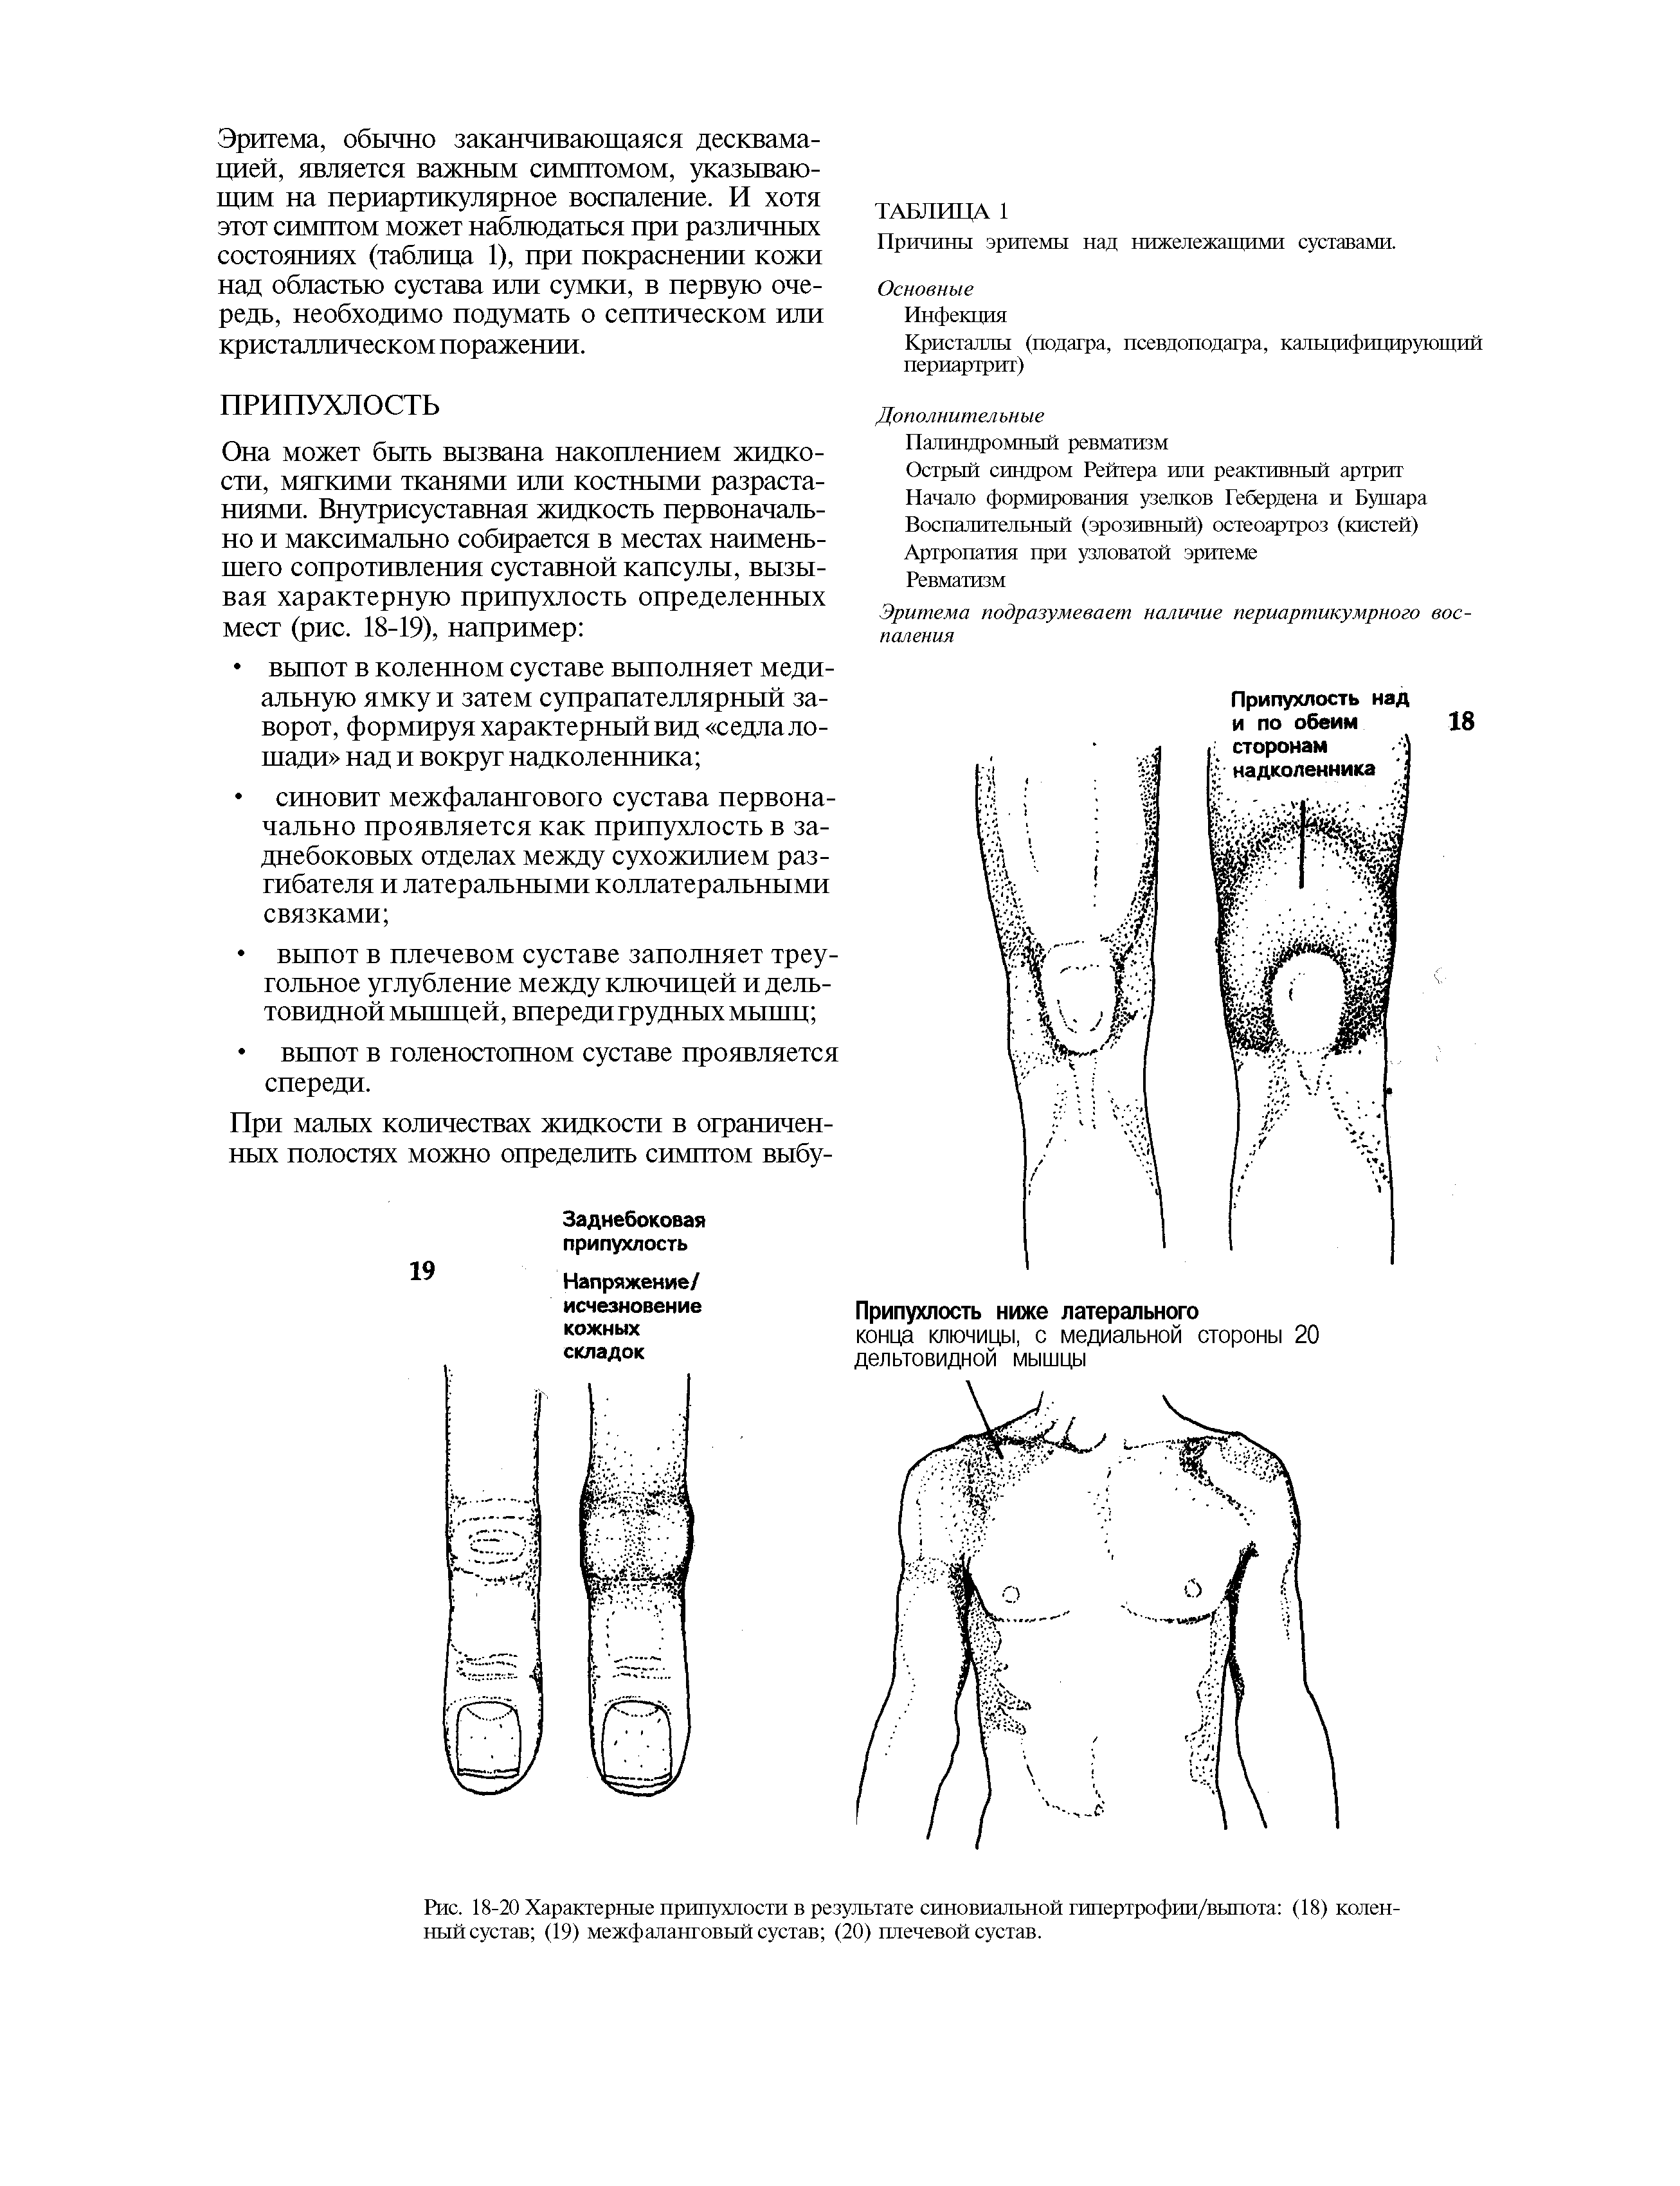 Рис. 18-20 Характерные припухлости в результате синовиальной гипертрофии/выпота (18) коленный сустав (19) межфаланговый сустав (20) плечевой сустав.